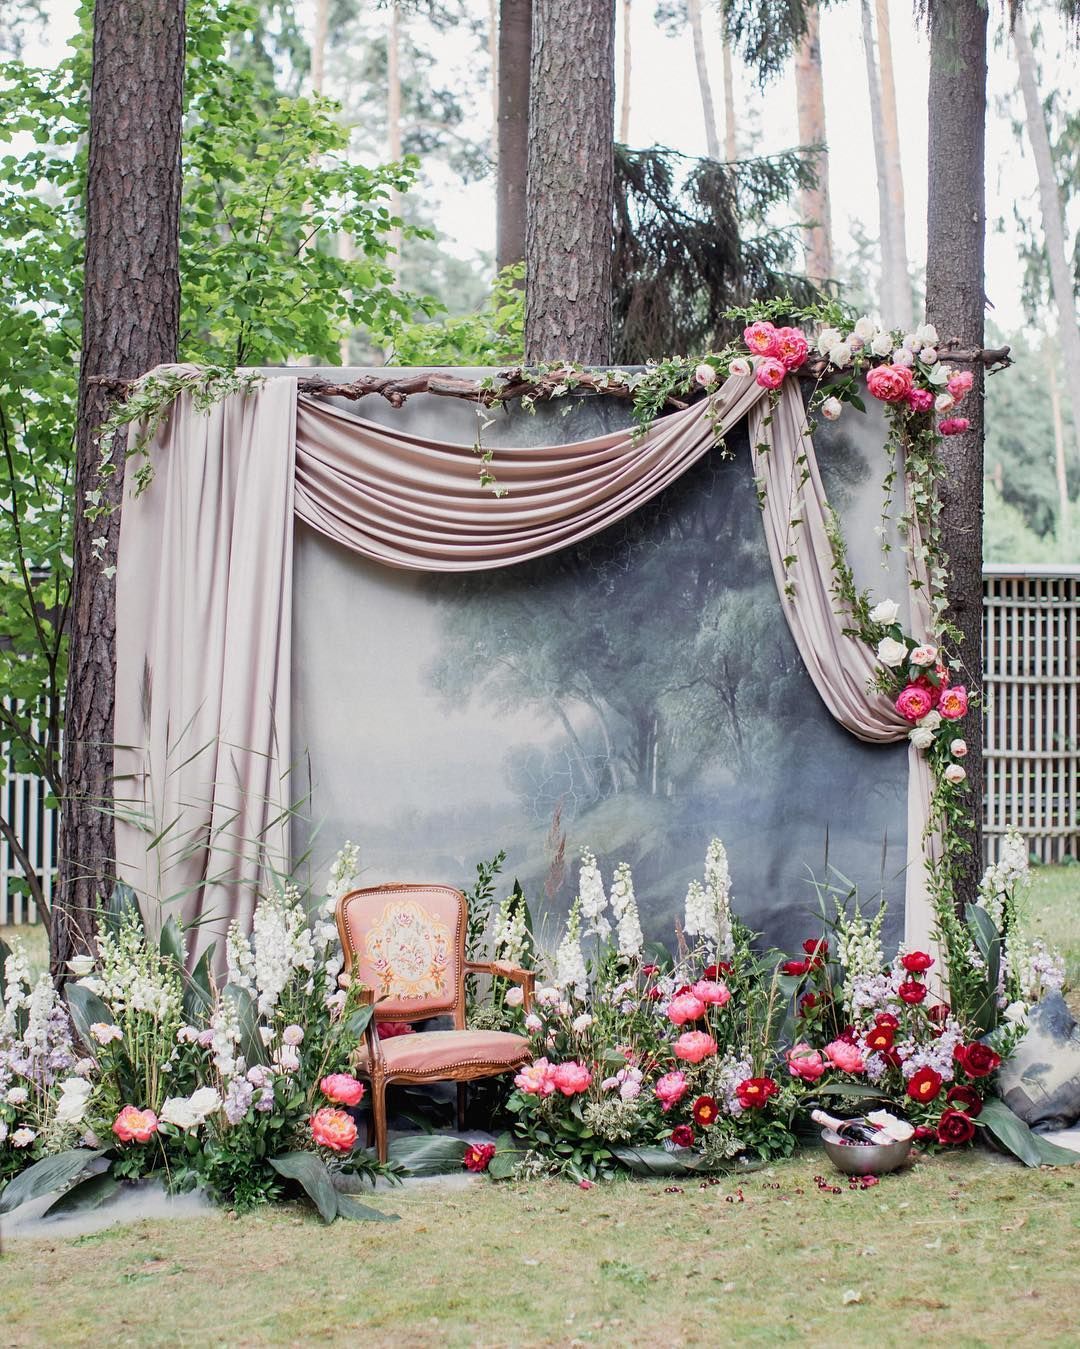 Awesome wedding photobooth backdrop